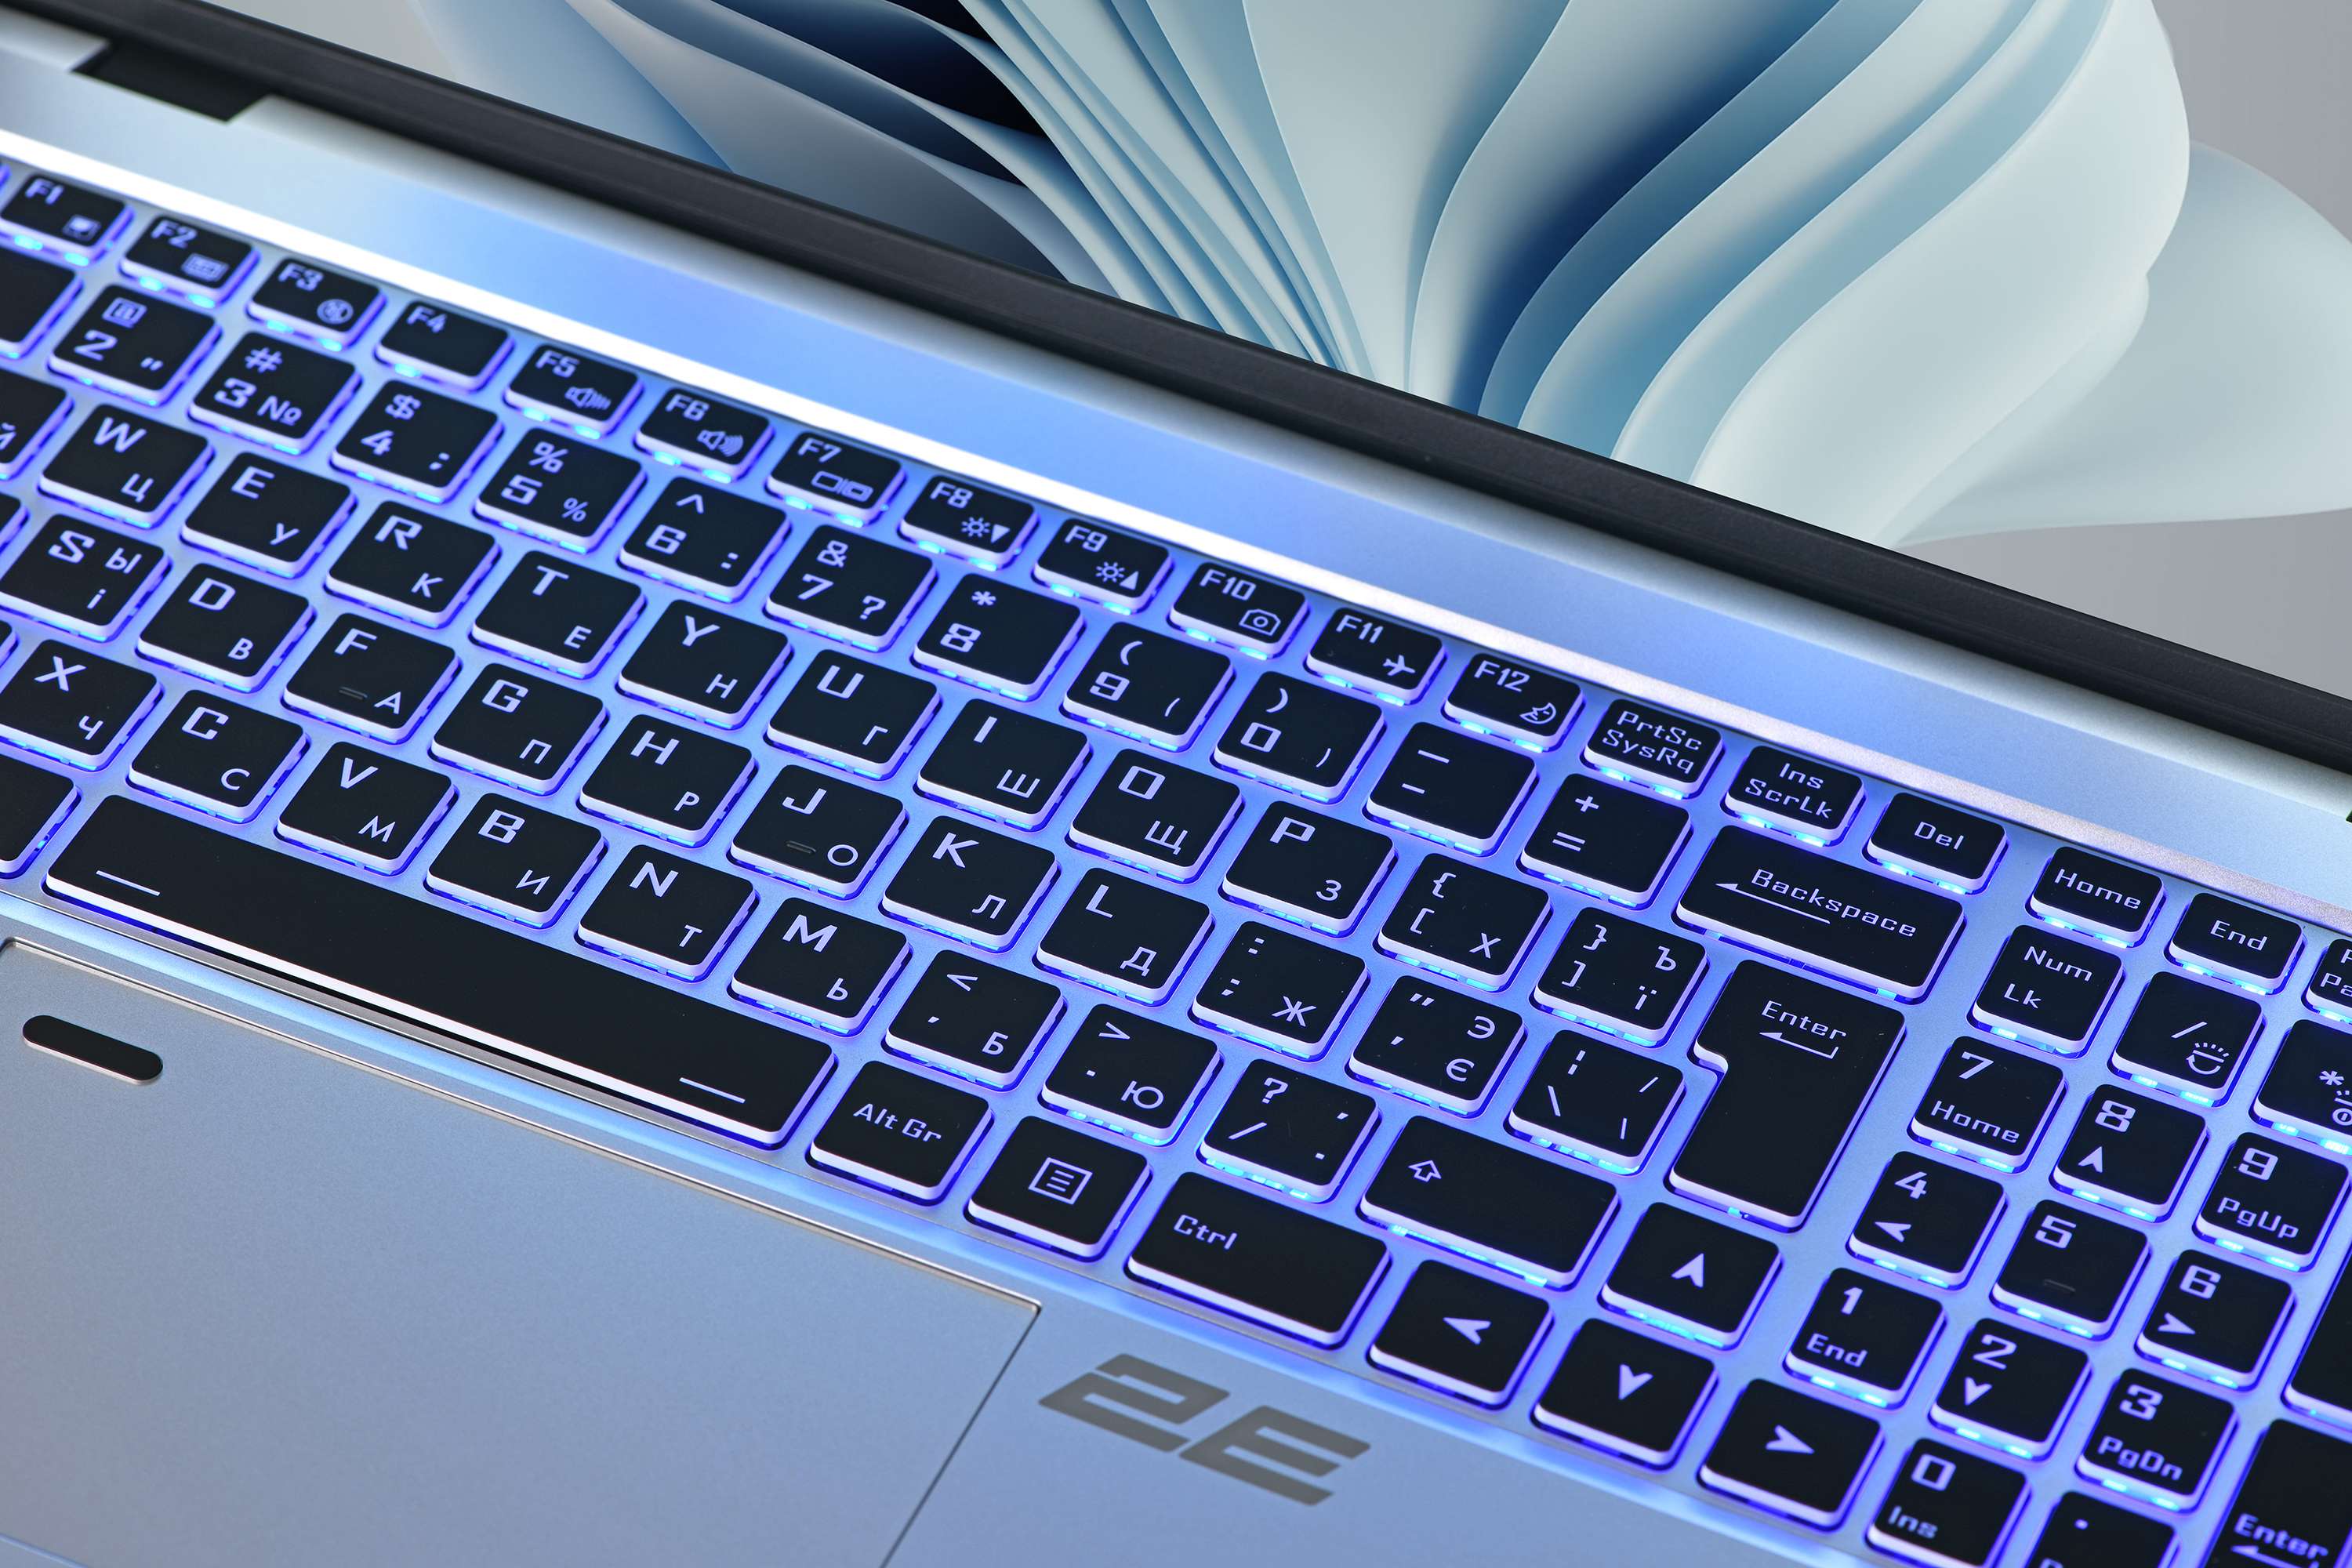 2E Starts Selling Laptops in Ukraine